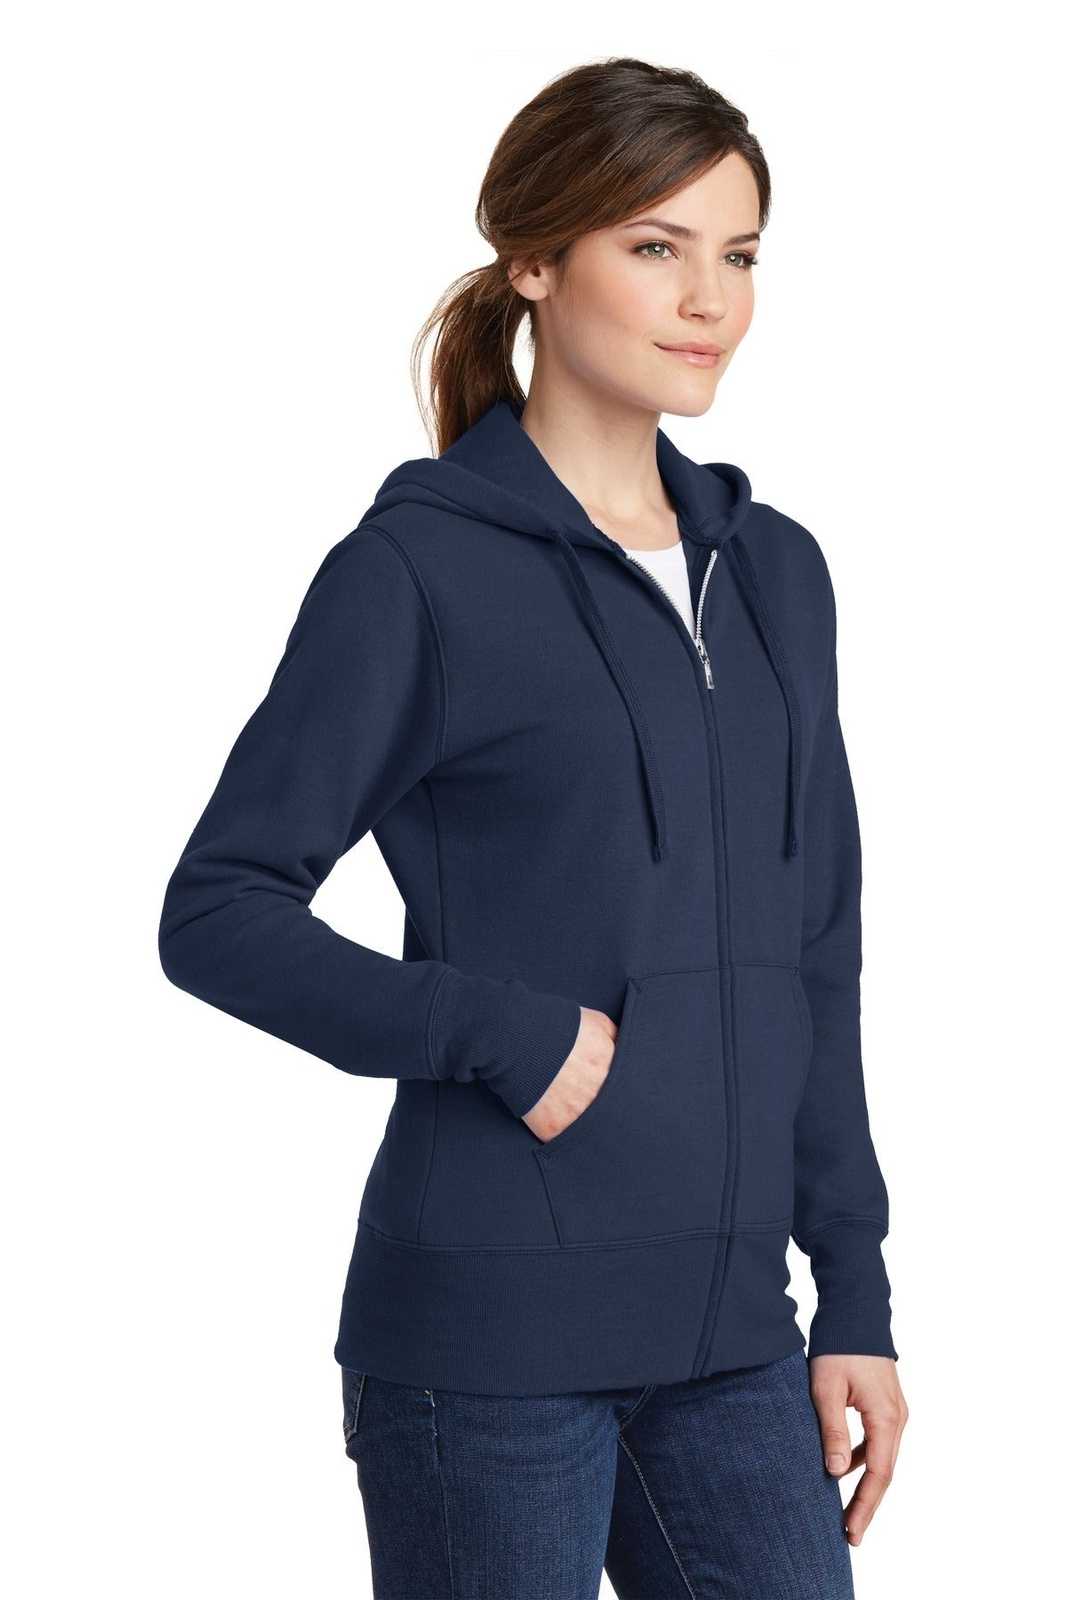 Port &amp; Company LPC78ZH Ladies Core Fleece Full-Zip Hooded Sweatshirt - Navy - HIT a Double - 4